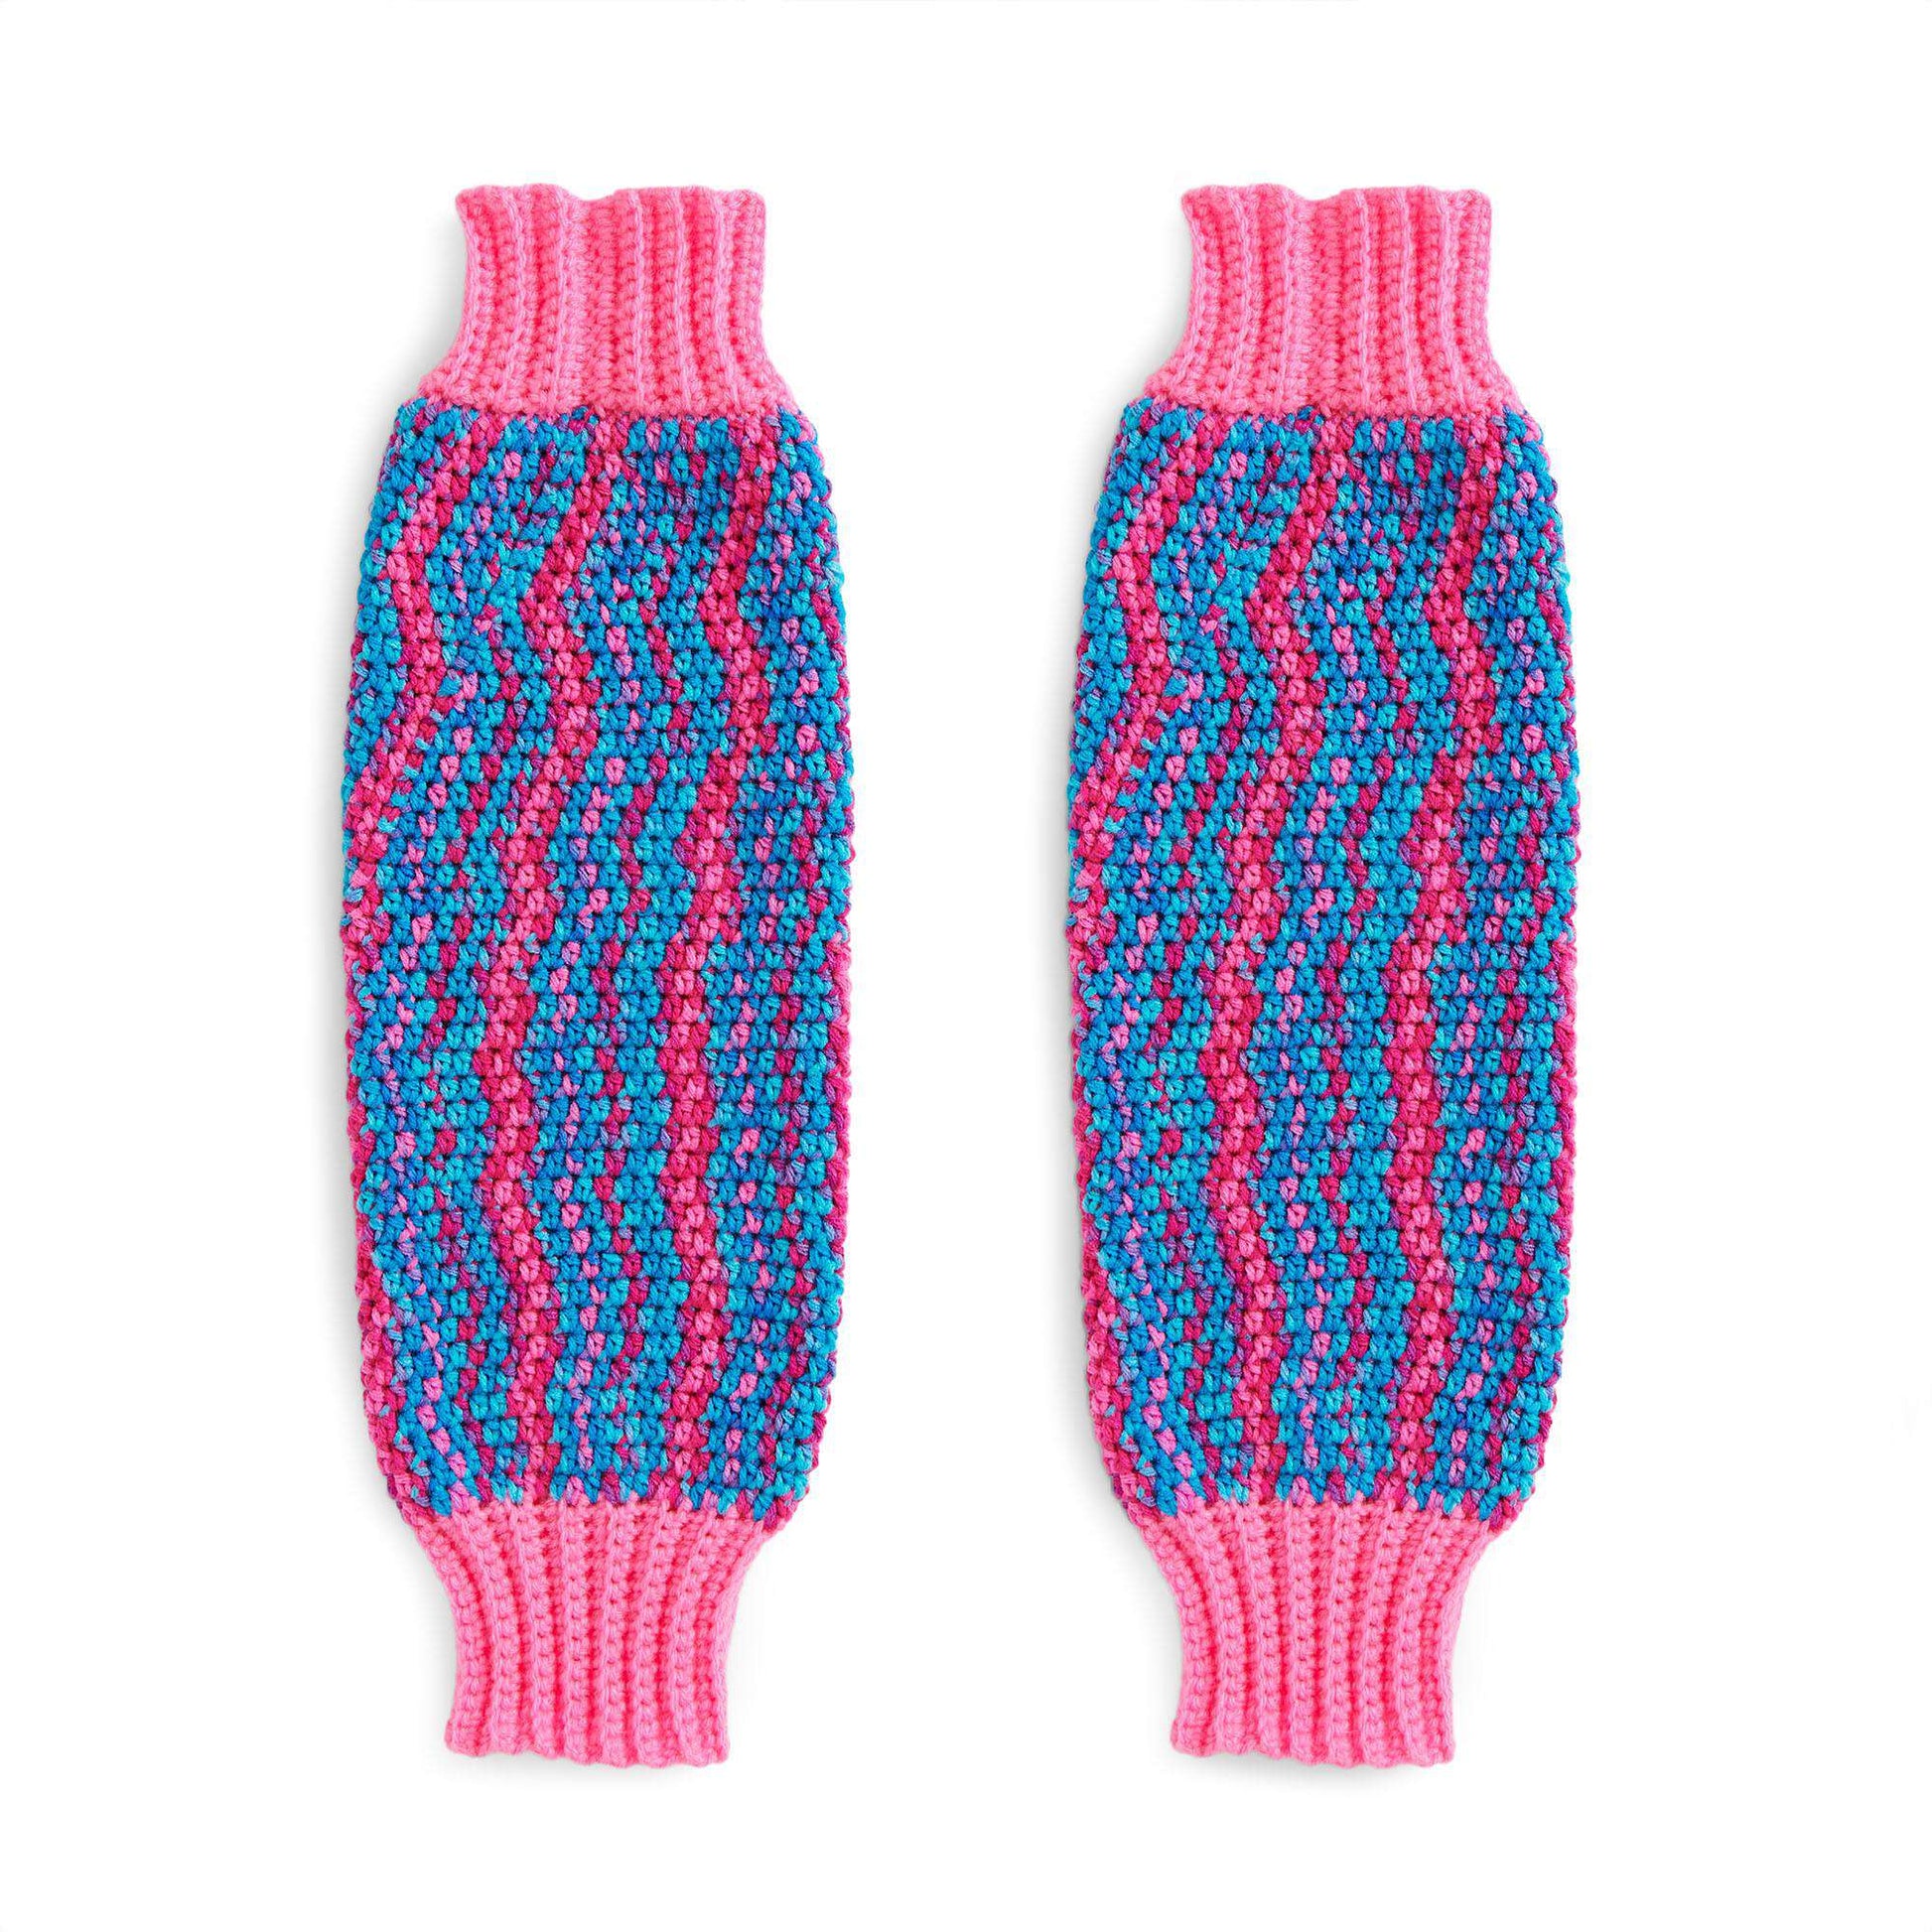 Free Red Heart Crochet Leg Warmers Pattern